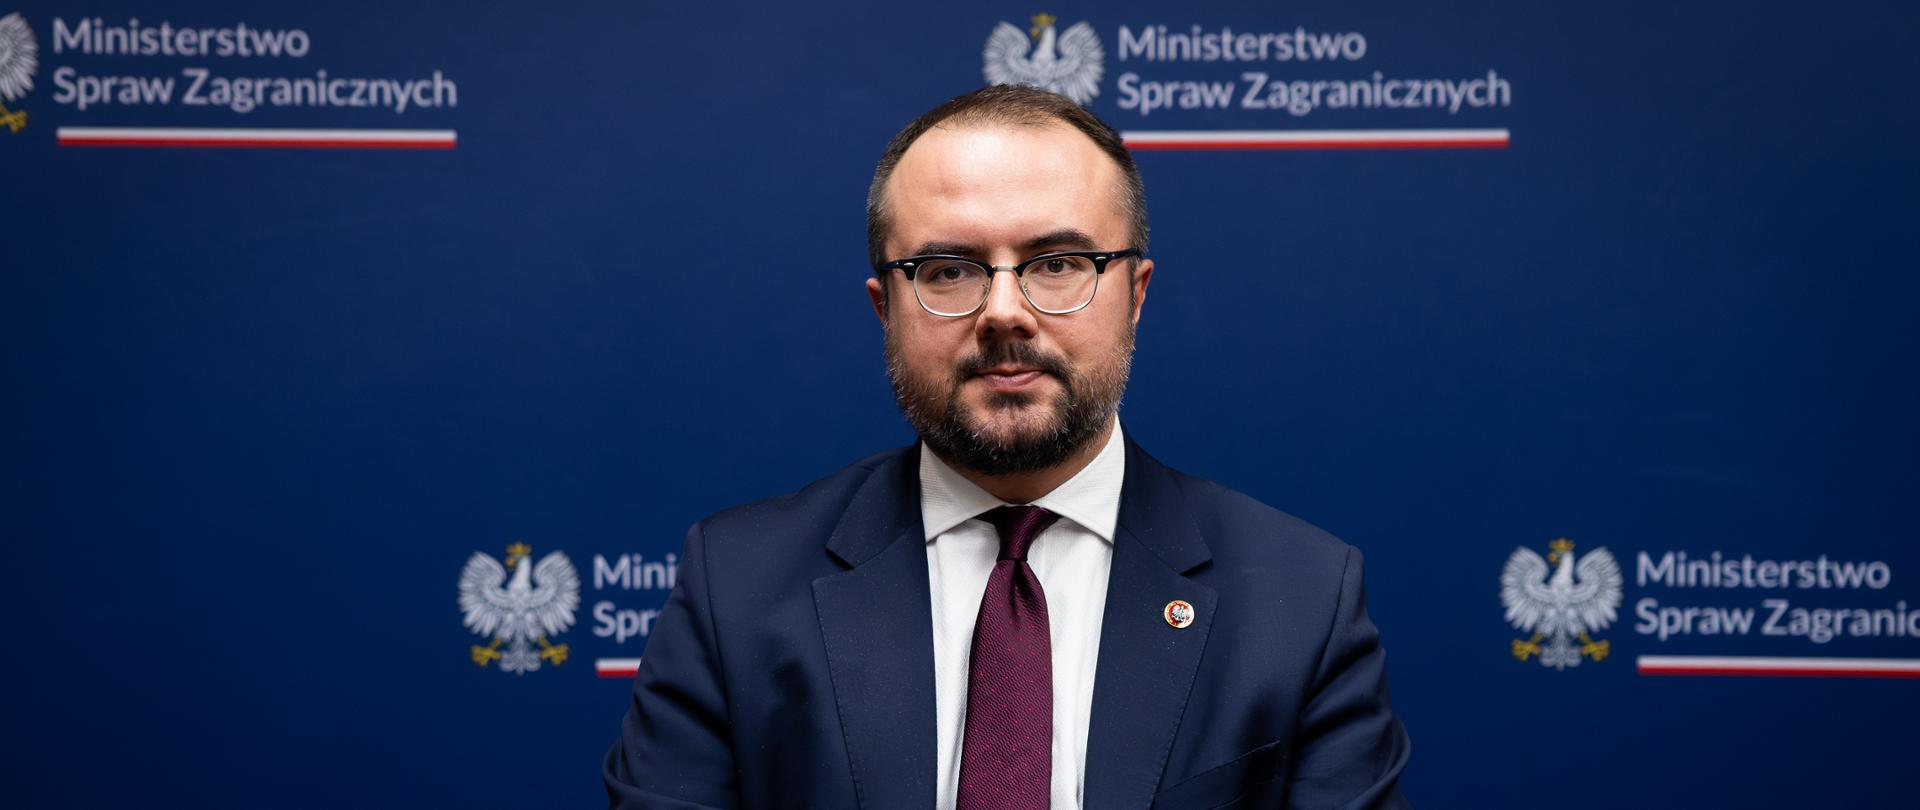 Secretary of State Paweł Jabłoński